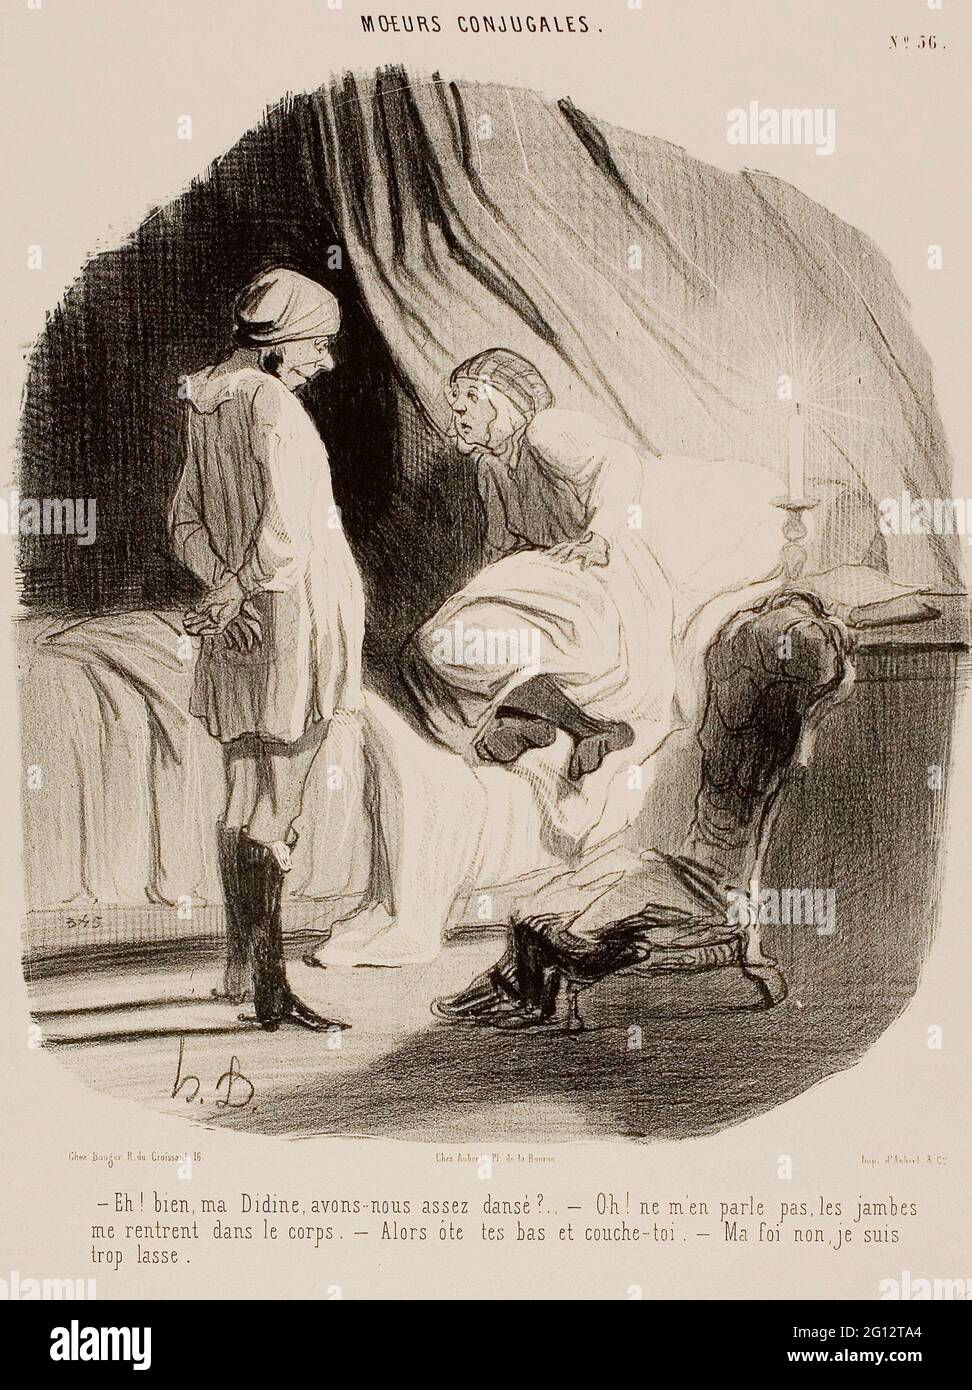 Honor-Victorin Daumier. o- EH! Il mio Didine, abbiamo ballato abbastanza - Oh, don - non menzionarlo più, sono completamente usurato fuori - quindi togliere il vostro Foto Stock